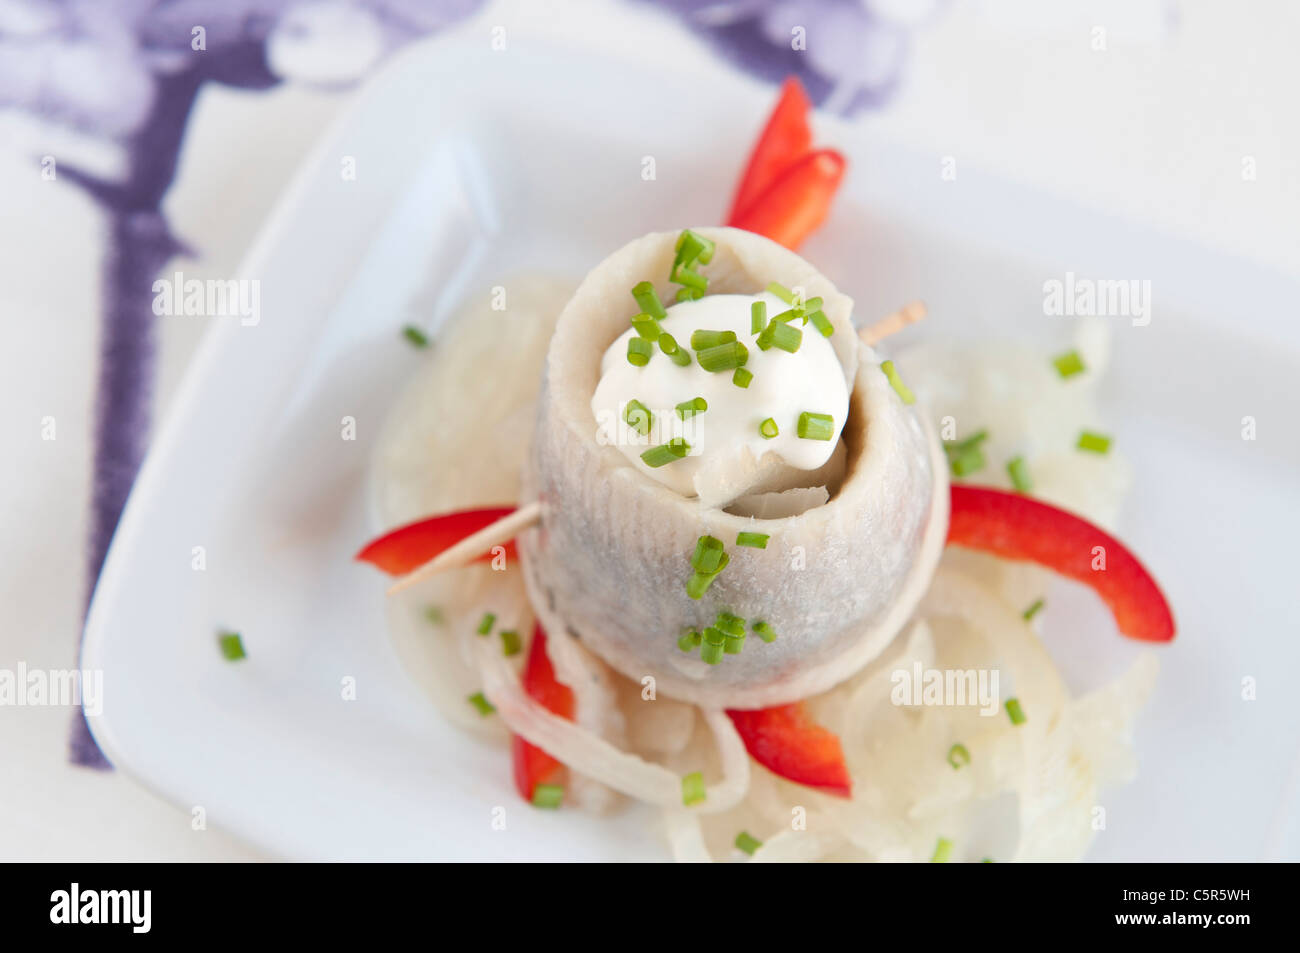 Filet de hareng mariné avec la ciboulette et l'oignon on white plate Banque D'Images